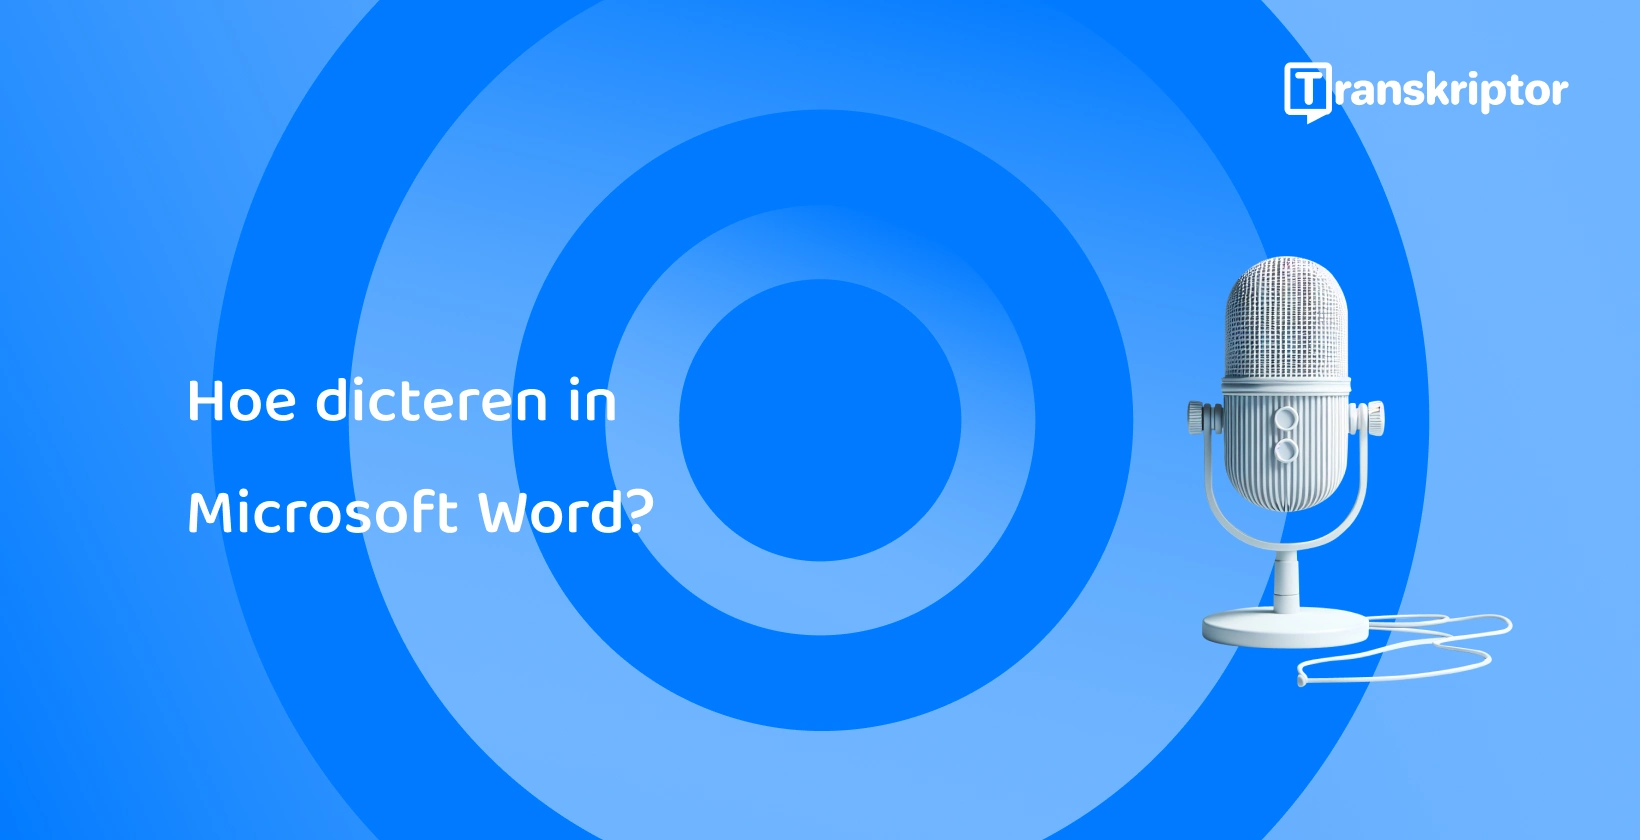 Een moderne microfoon tegen een blauwe achtergrond, die spraakdicteerfuncties in Microsoft Word symboliseert.